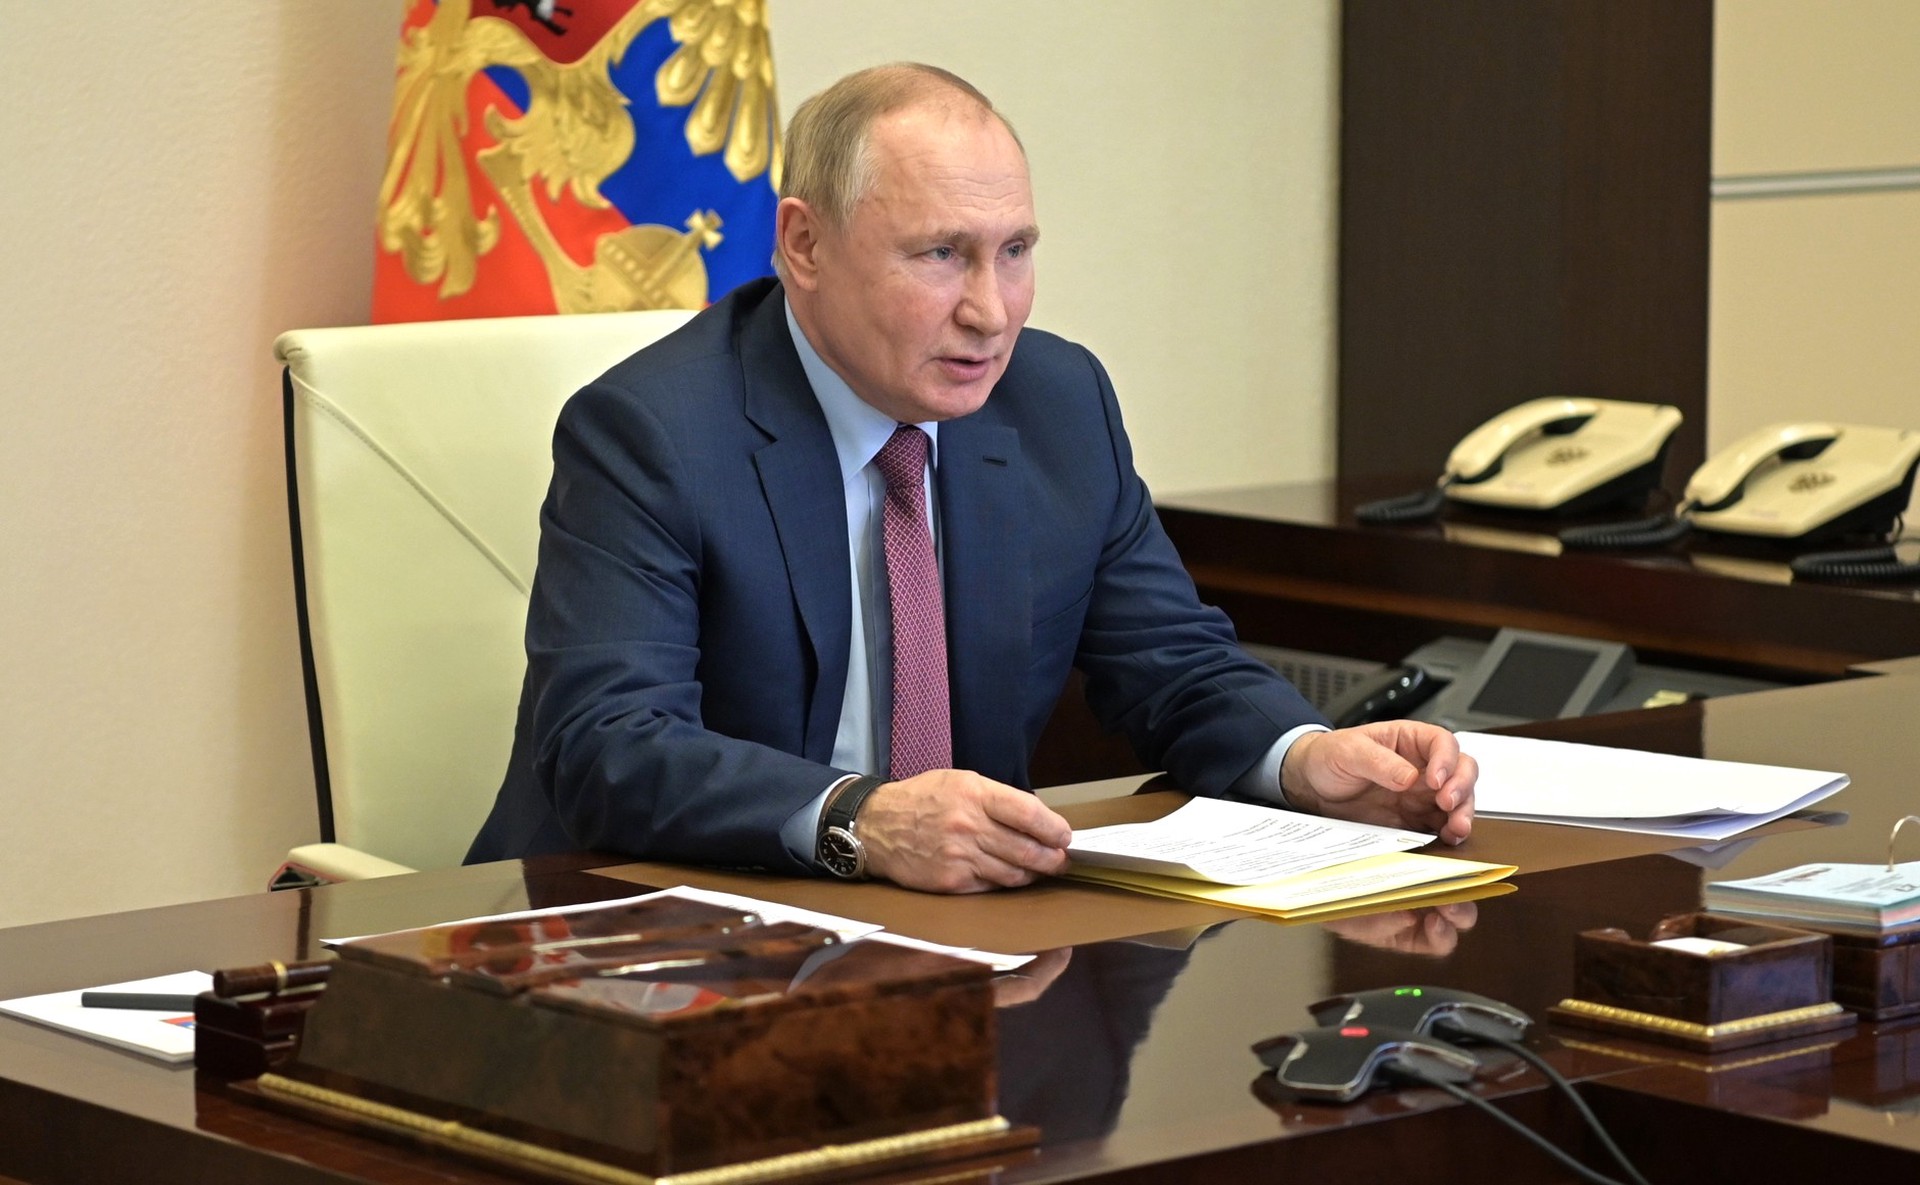 Экс-разведчик США Риттер объяснил высокую явку на выборах в РФ и победу Путина